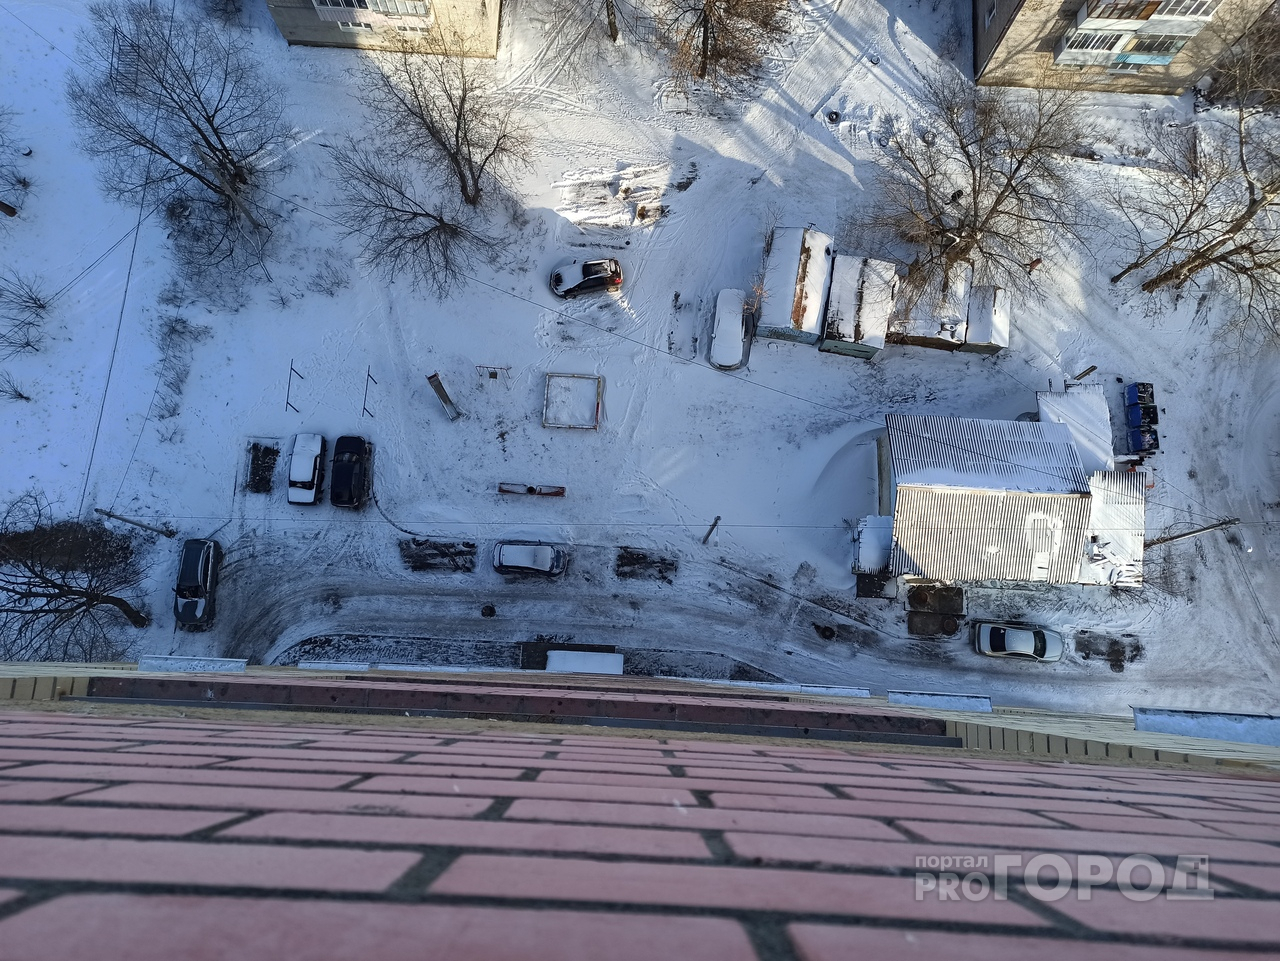 "Ищи меня внизу": что известно о девочке, выпавшей с балкона 19-го этажа на авто в Ярославле